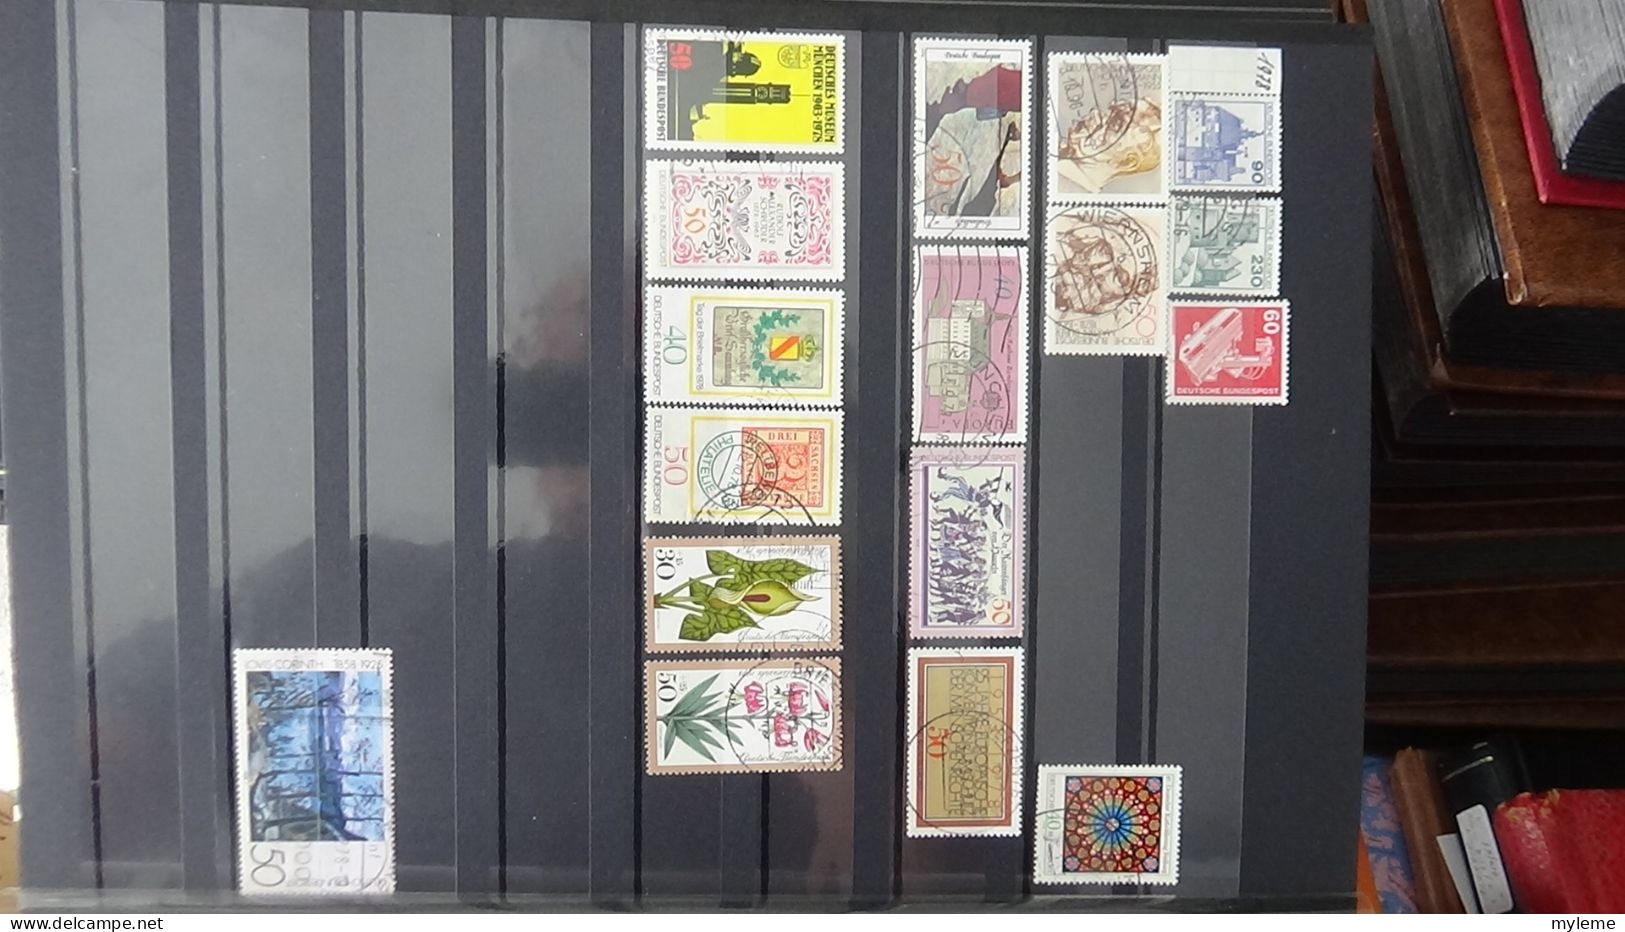 BF24 Ensemble de timbres de divers pays + bande N° 242A oblitérée et signée. Cote 1200 euros